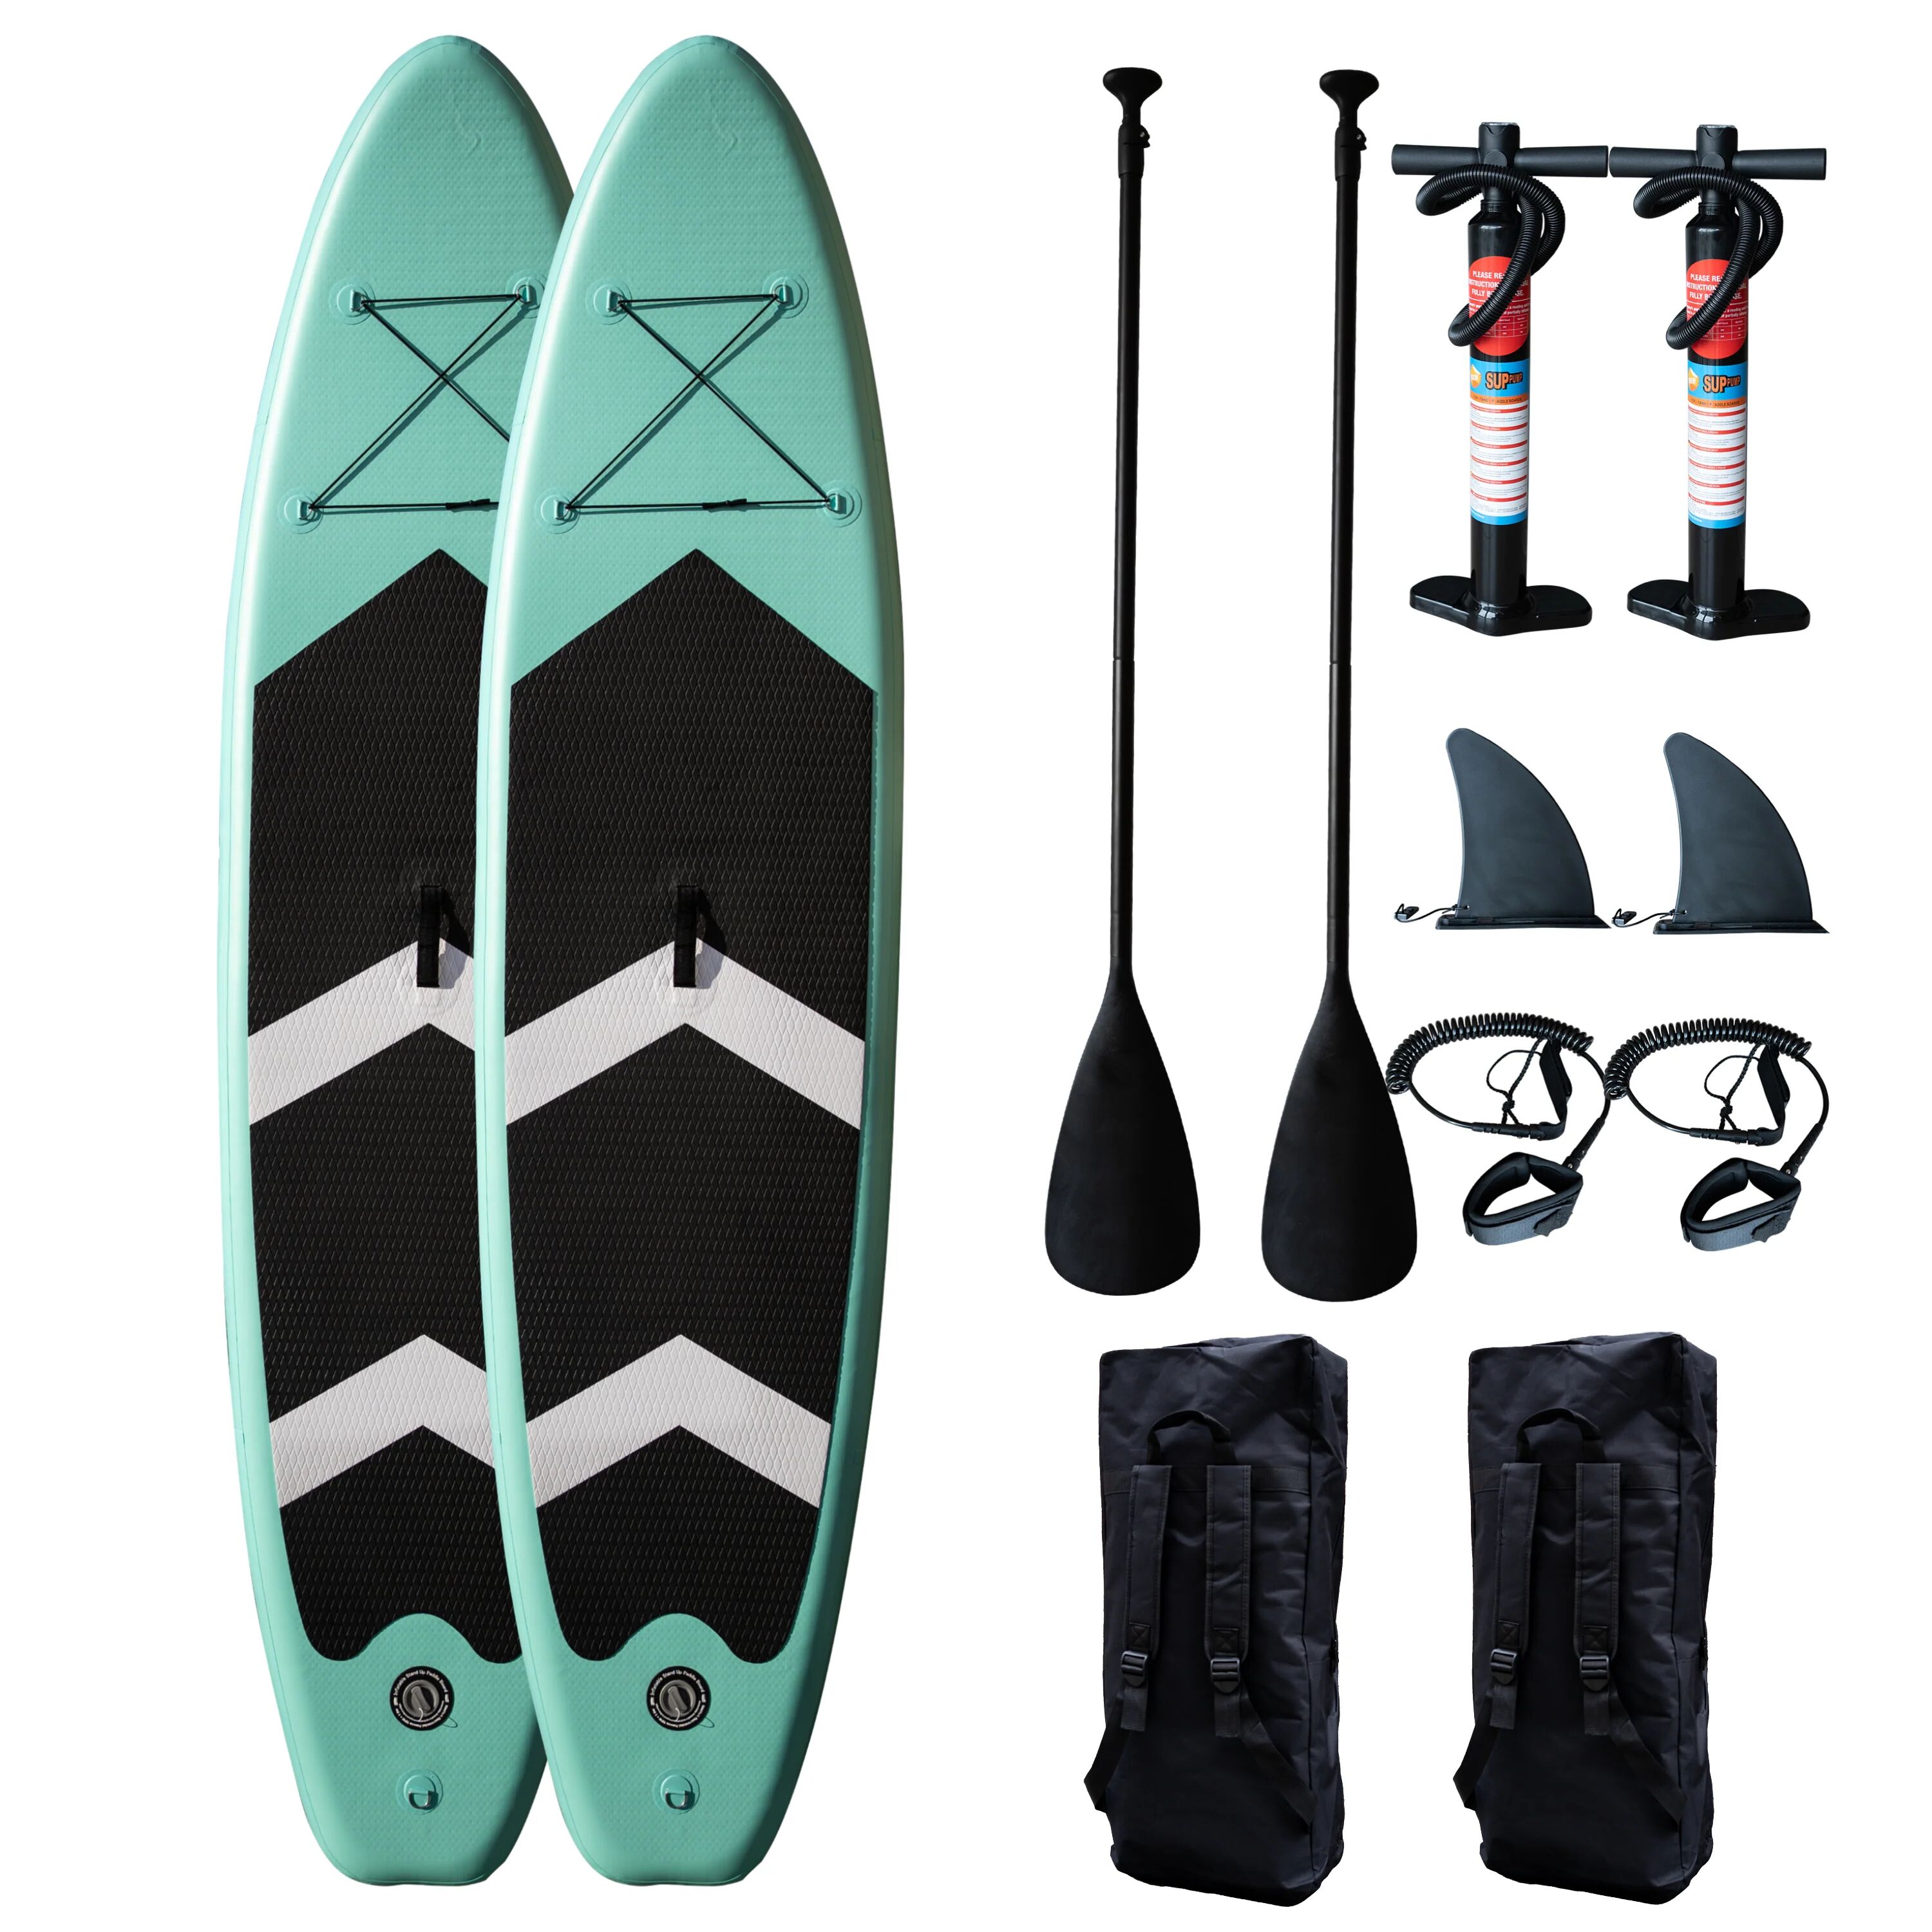 CoolSnow.dk - Populært udstyr og skibriller til din skiferie! 2 x Surfy Paddleboard - Puhallettava SUP 3,2M